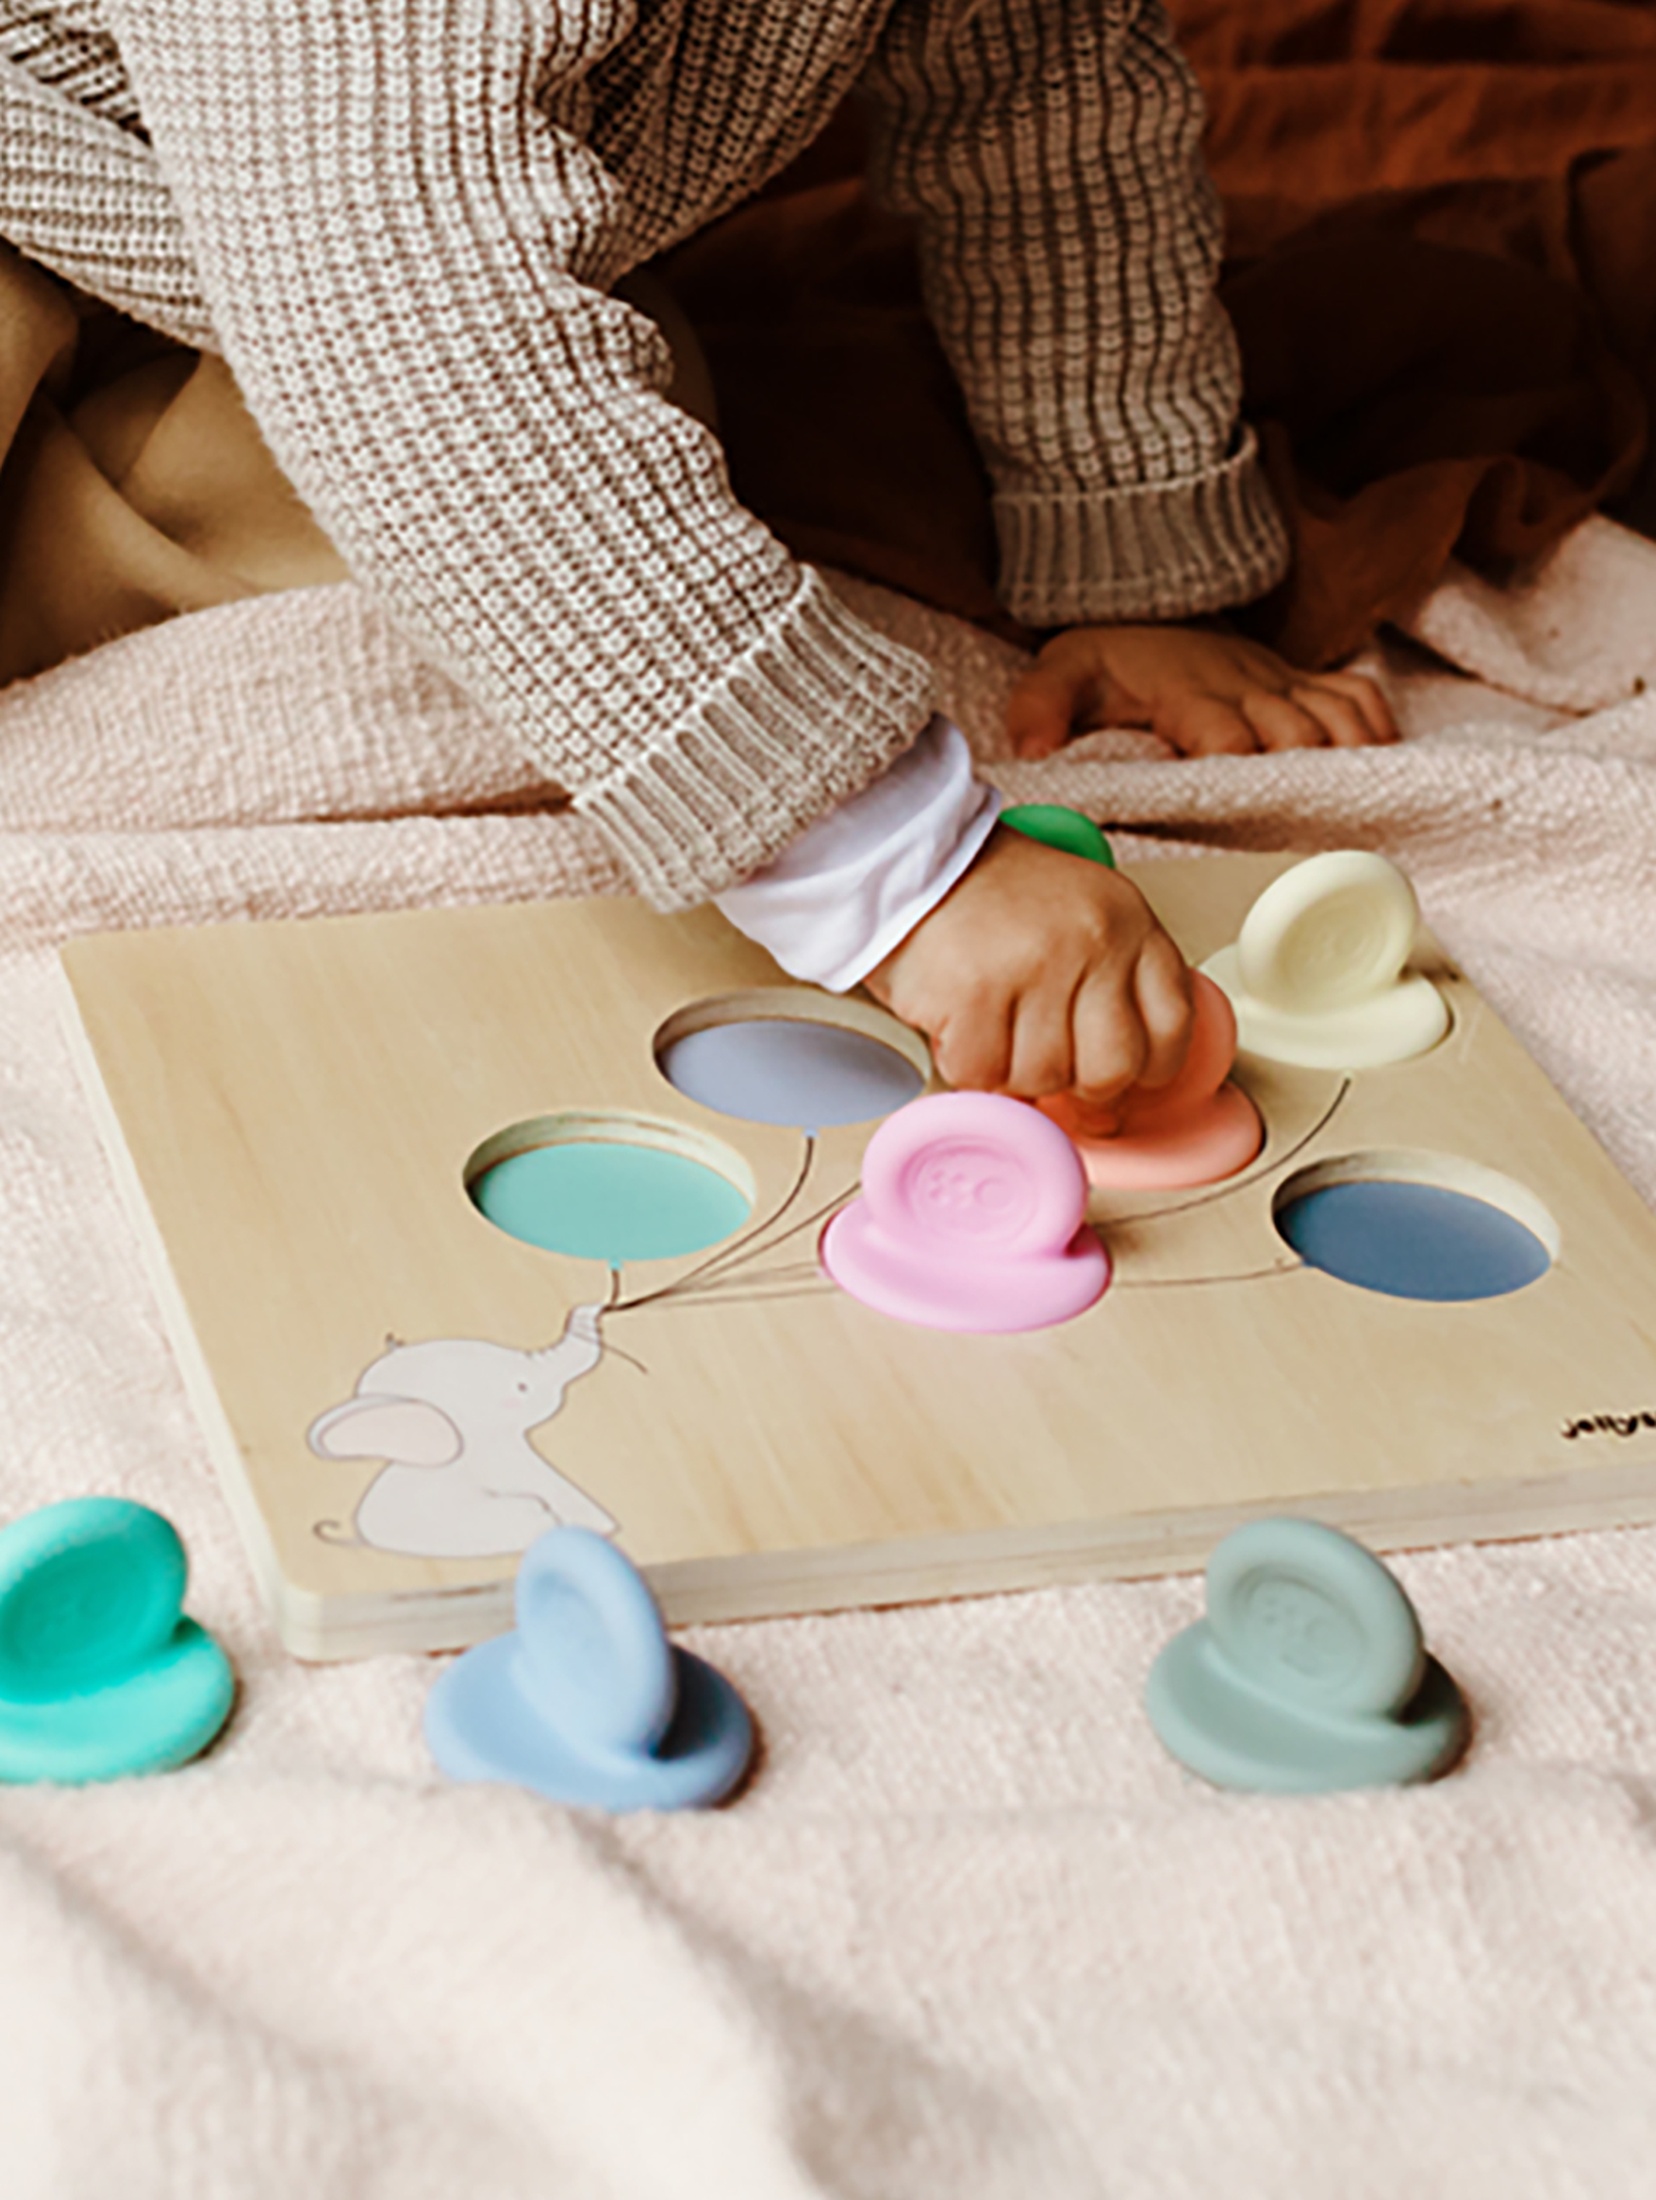 Balonowy sorter dla niemowlaka pastelowy Jellystone Designs